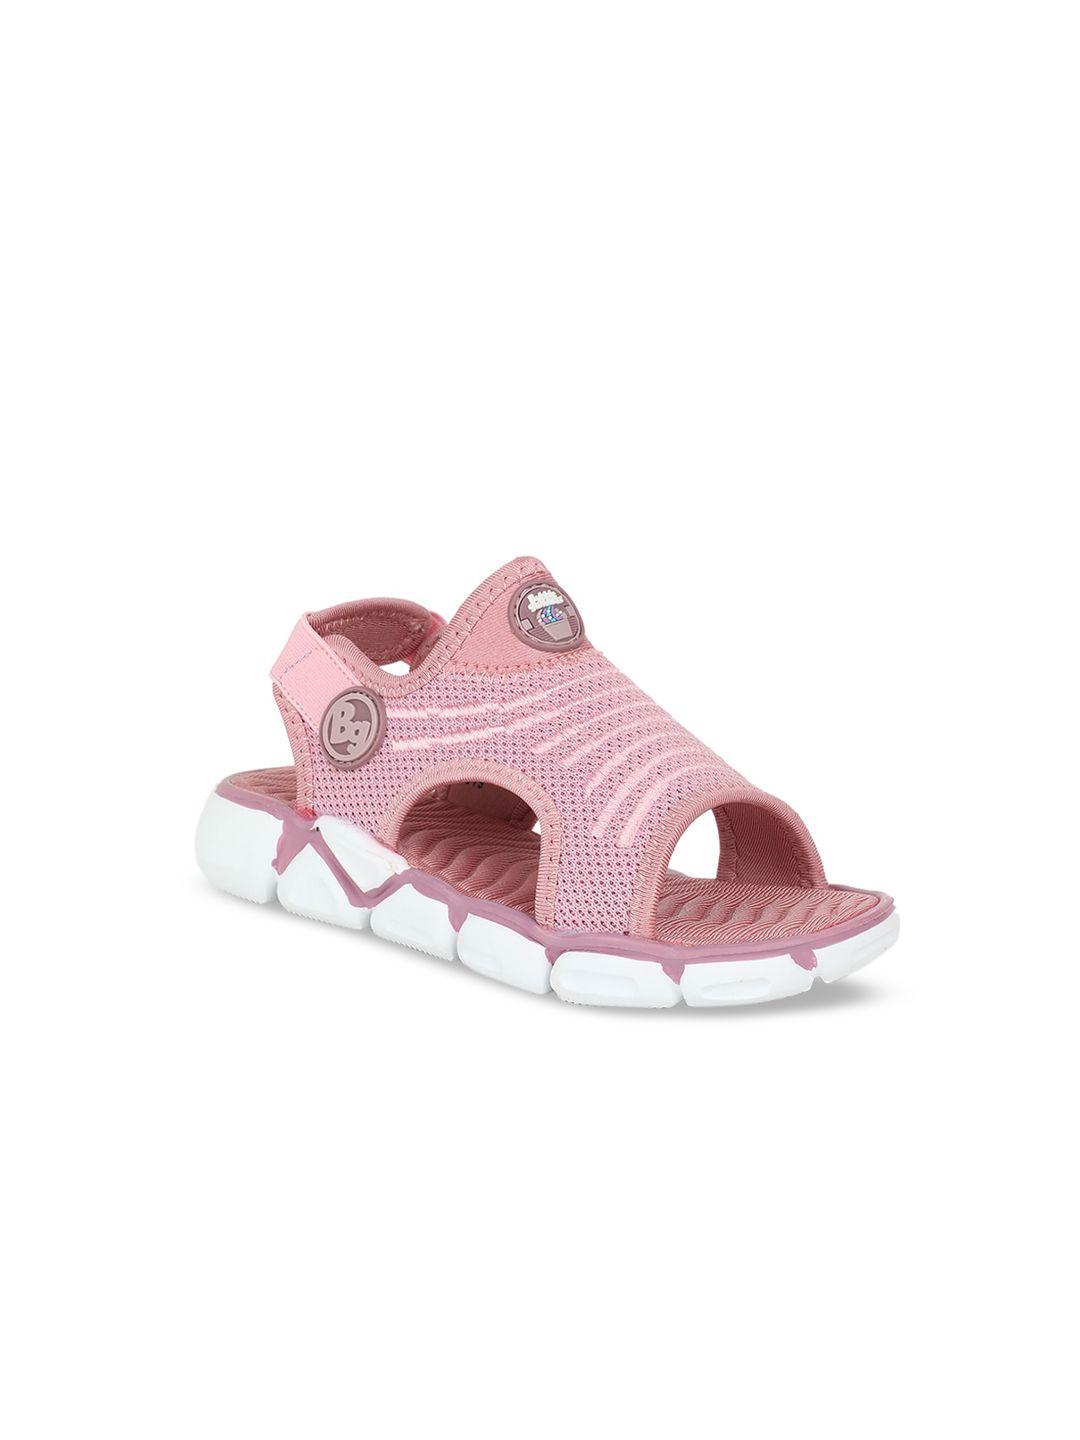 bubblegummers-girls-pink-open-toe-flats